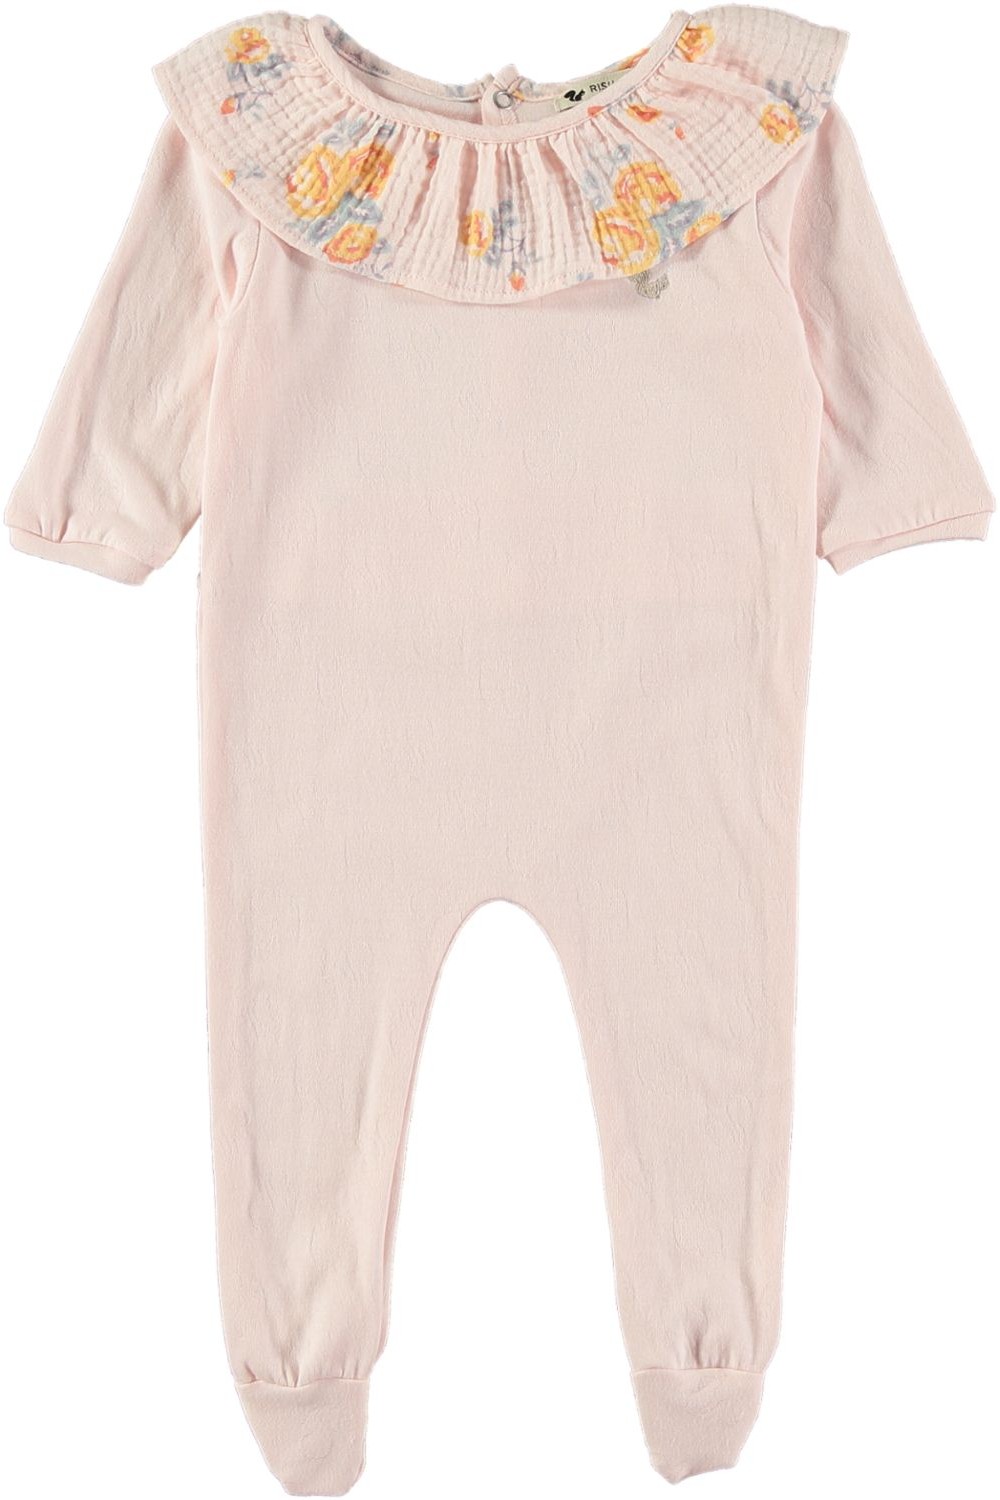 Pyjama bébé Caline coloris pétal